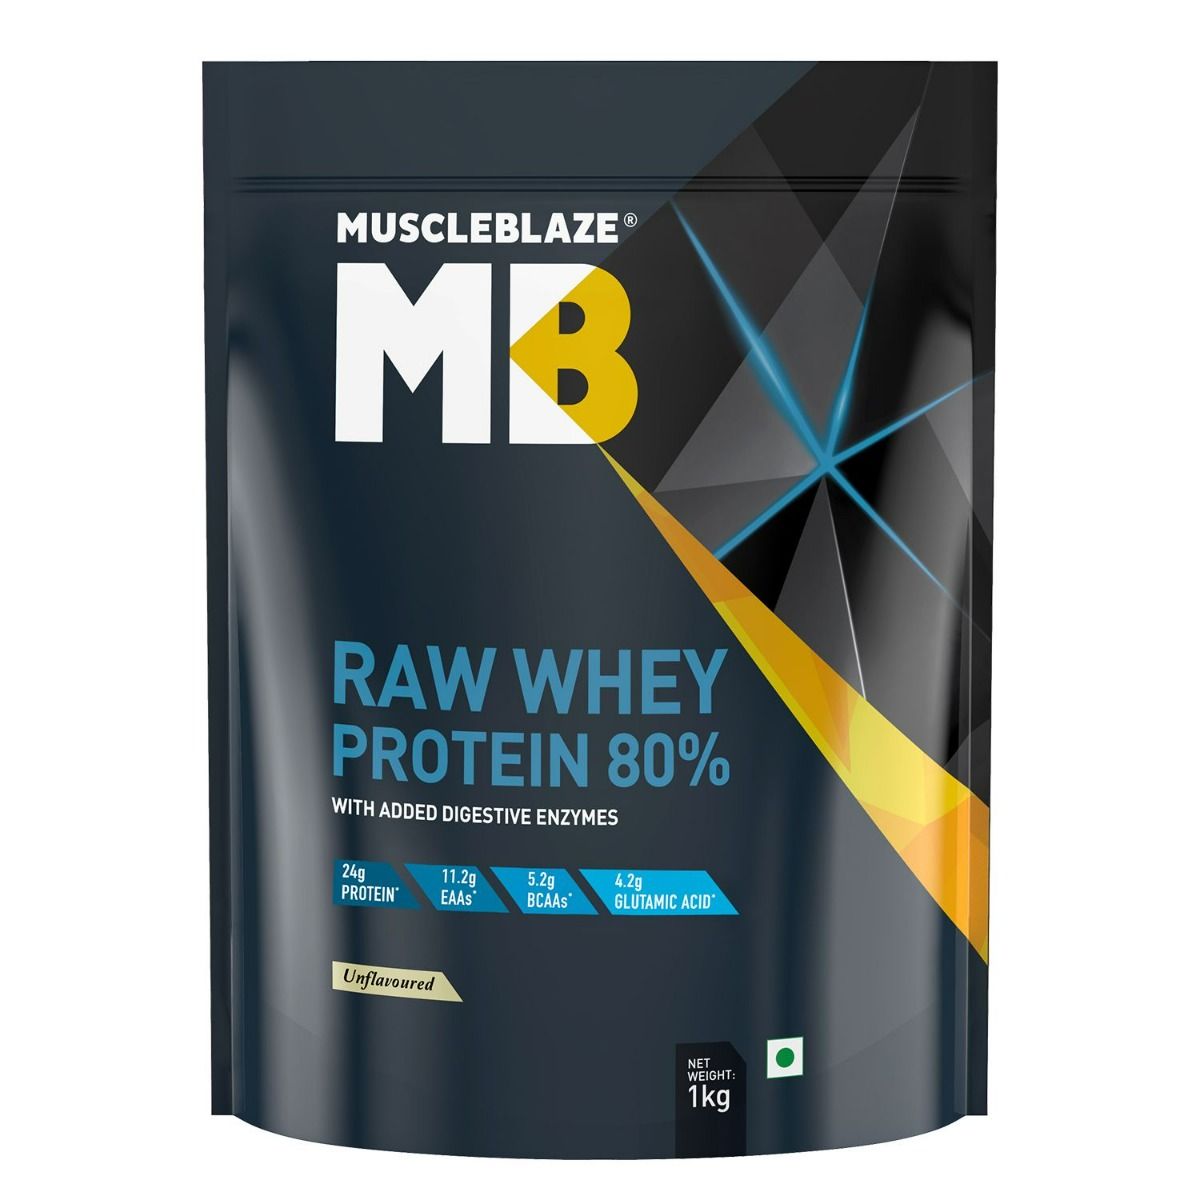 Buy MuscleBlaze Raw Whey Protein 80% Powder, 1 kg Online